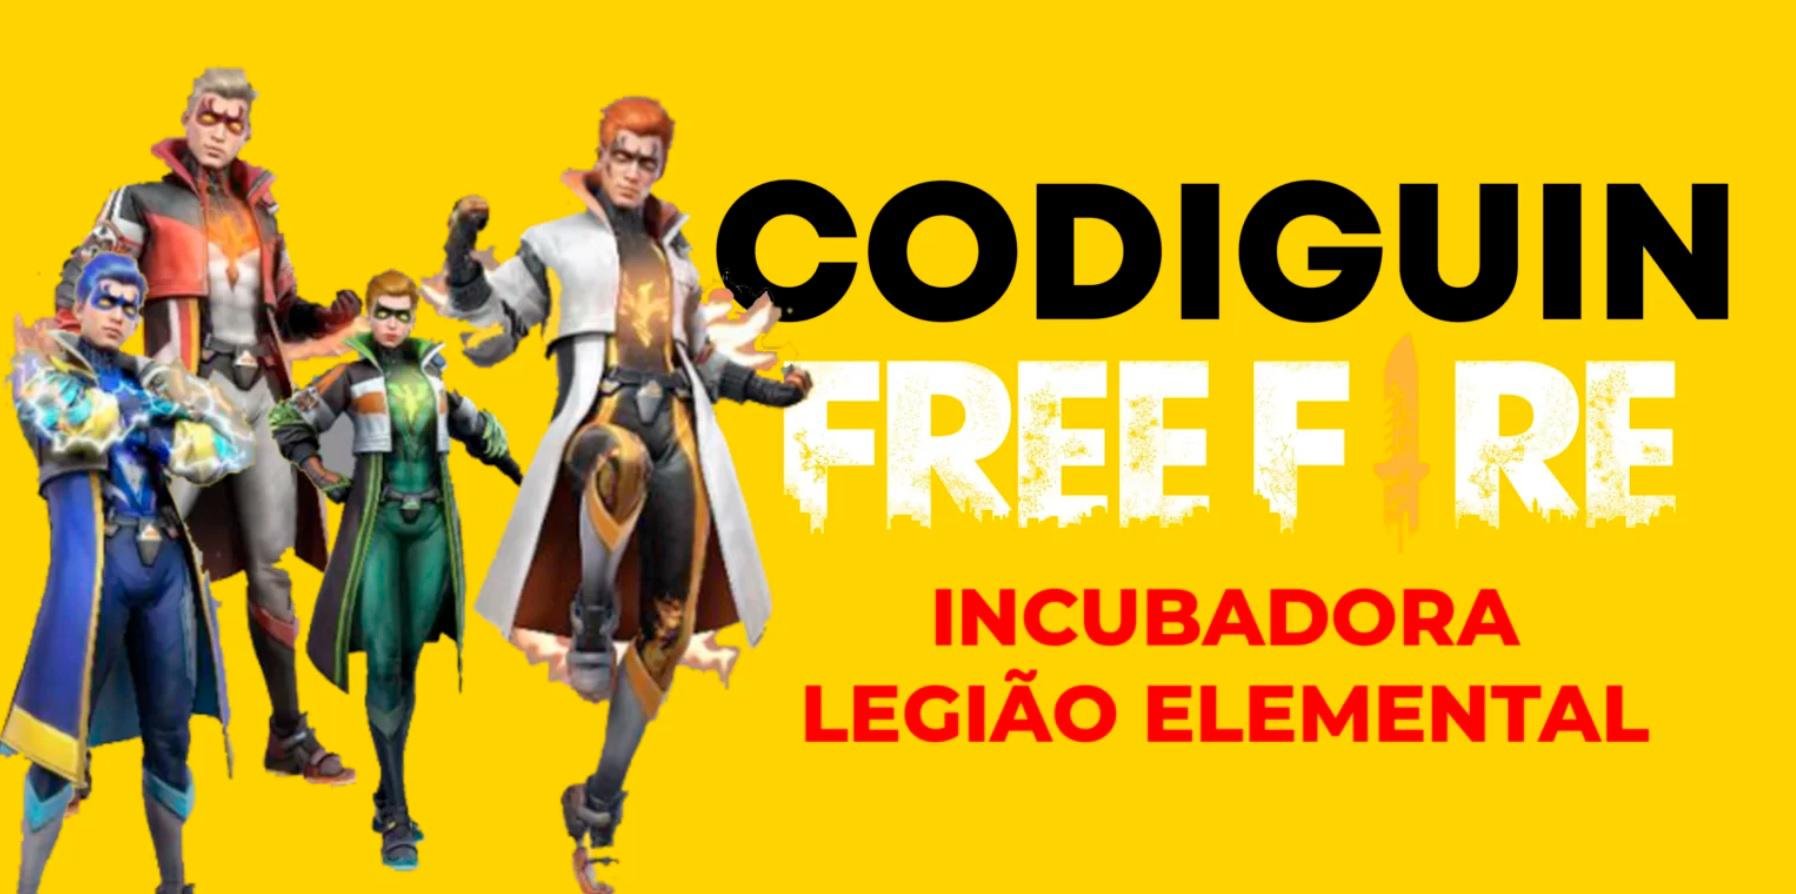 Codiguins Free Fire 2022: códigos pra resgatar no site Rewards